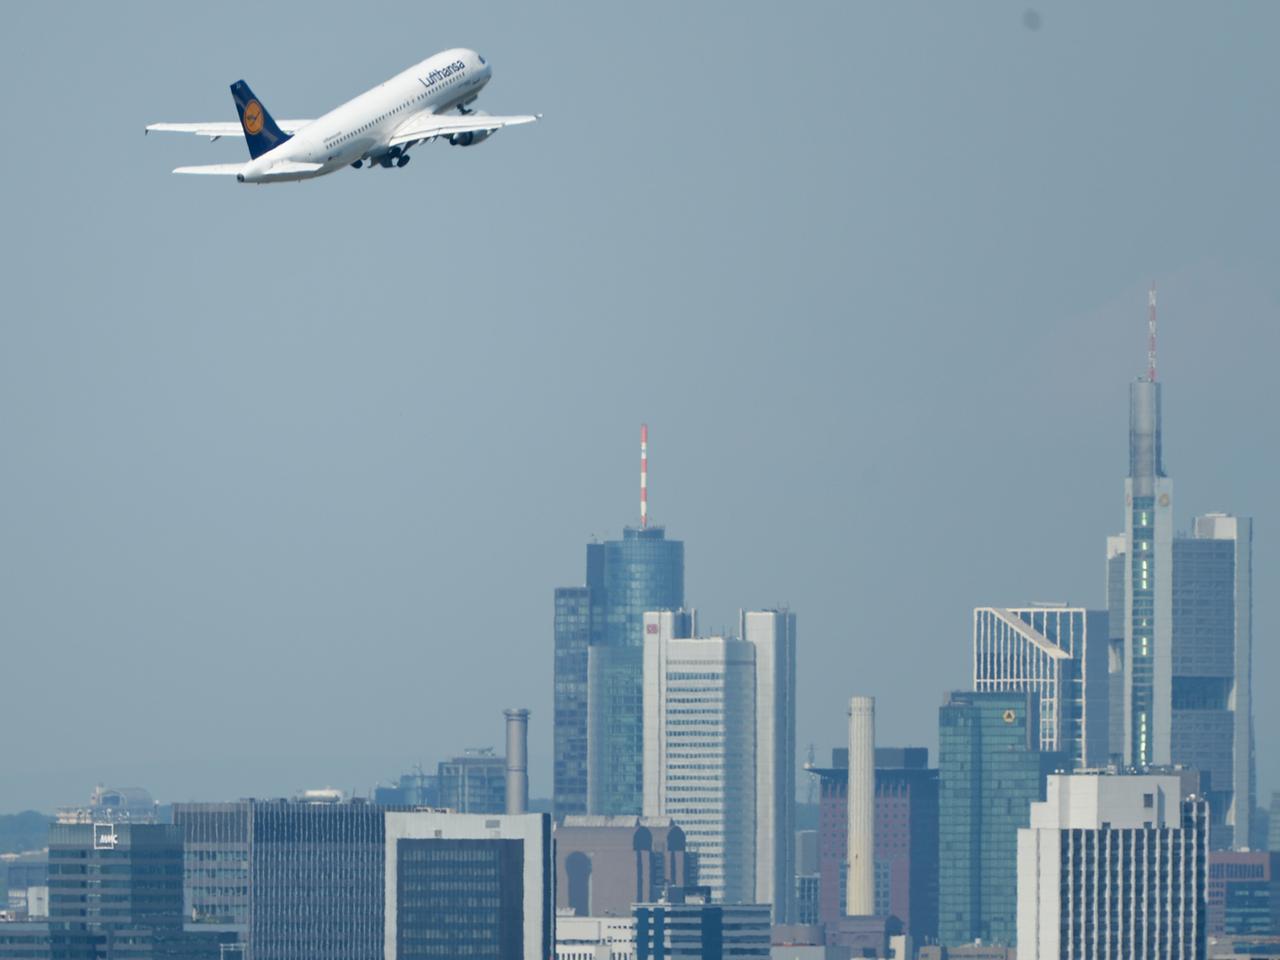 Flugzeug im Abflug vom Frankfurter Flughafen, im Hintergrund die Skyline.